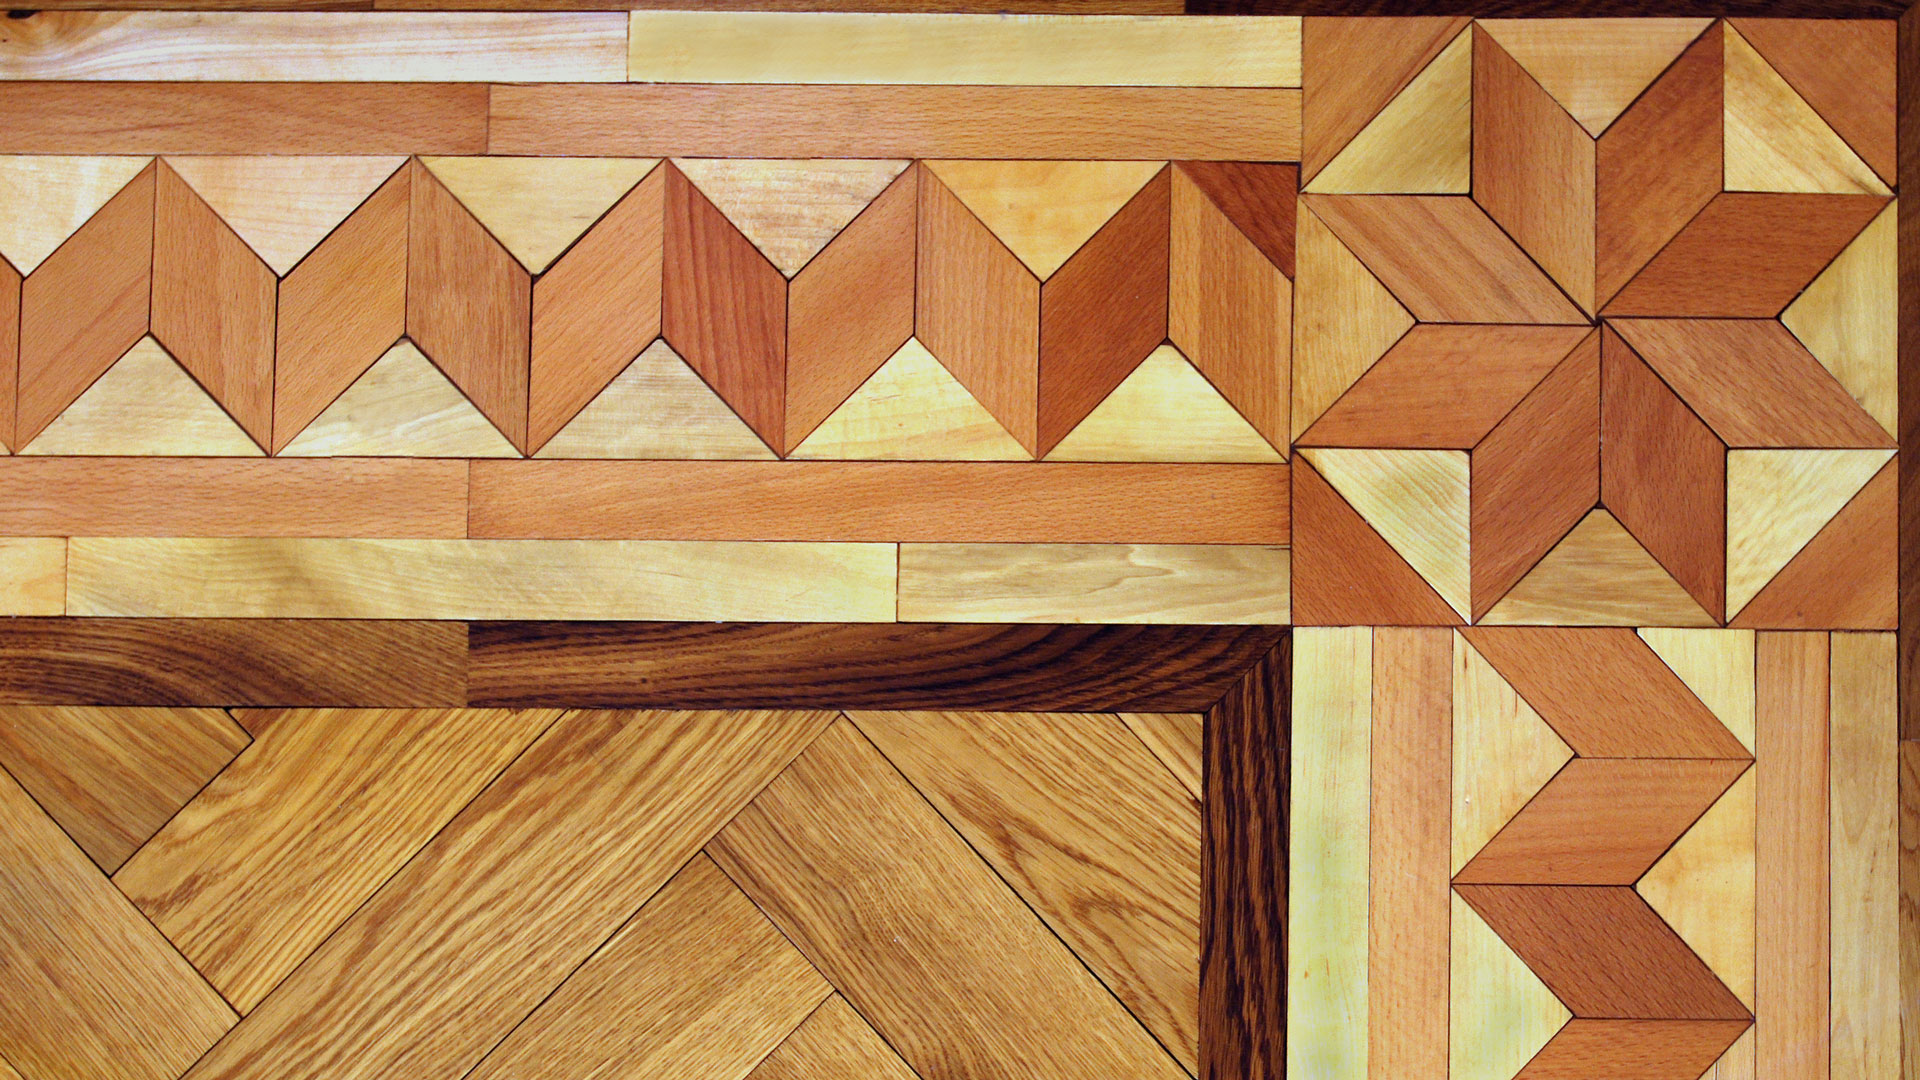 piso parquet decorativo usando parquets pequeño en formas geométricas para hacer parquets de diseño complejo